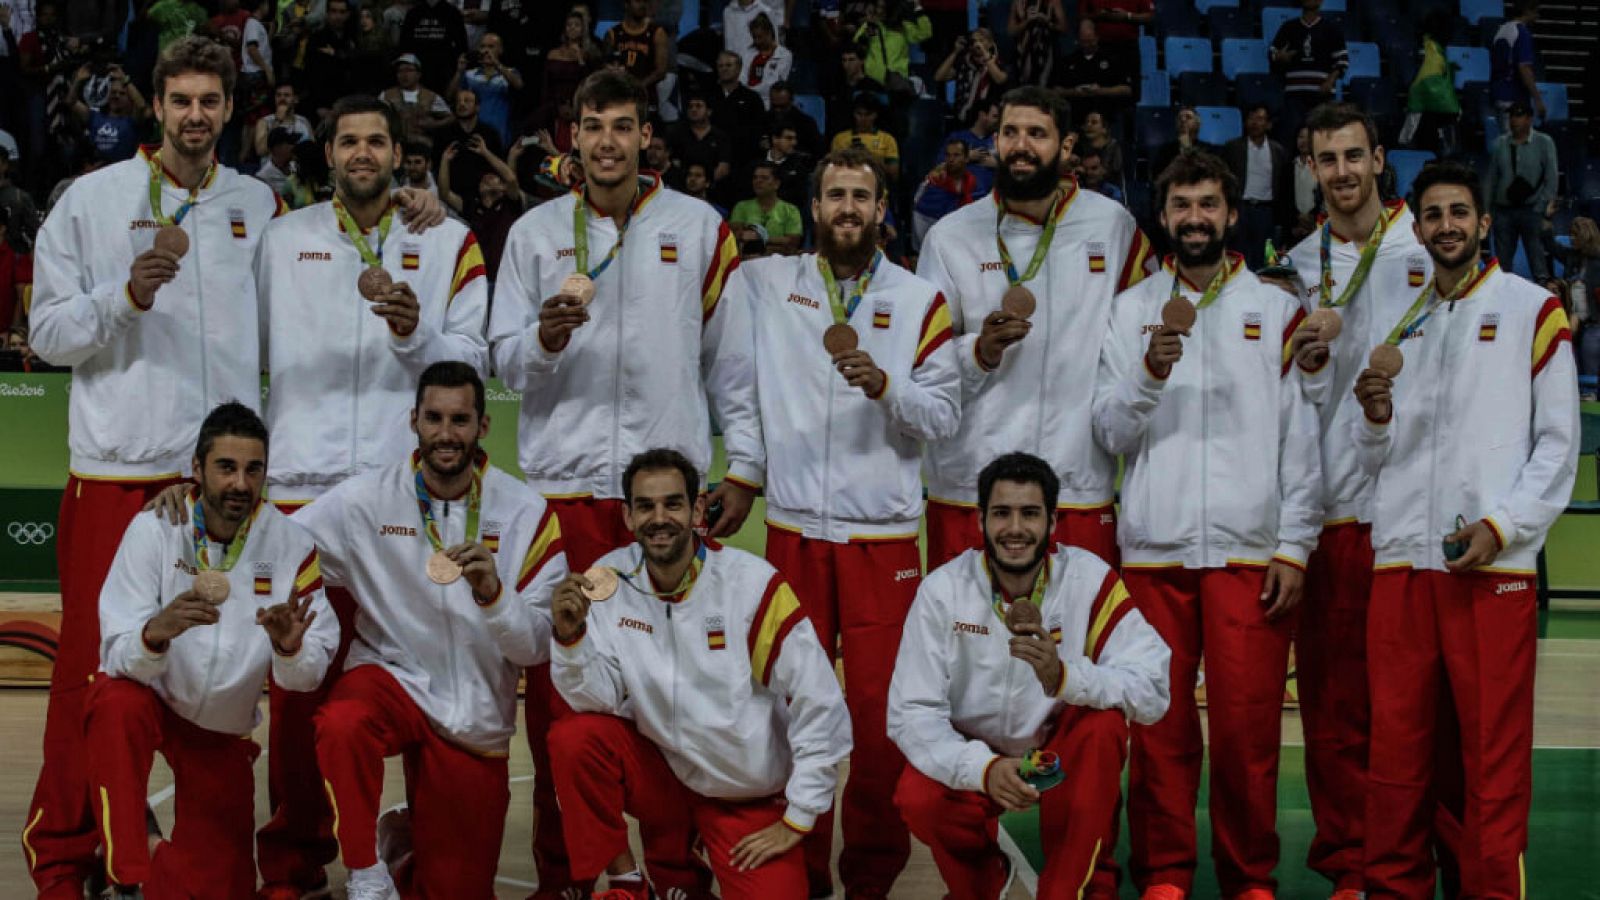 La selección masculina de baloncesto gana la medalla de bronce en los Juegos Olímpicos de Río 2016